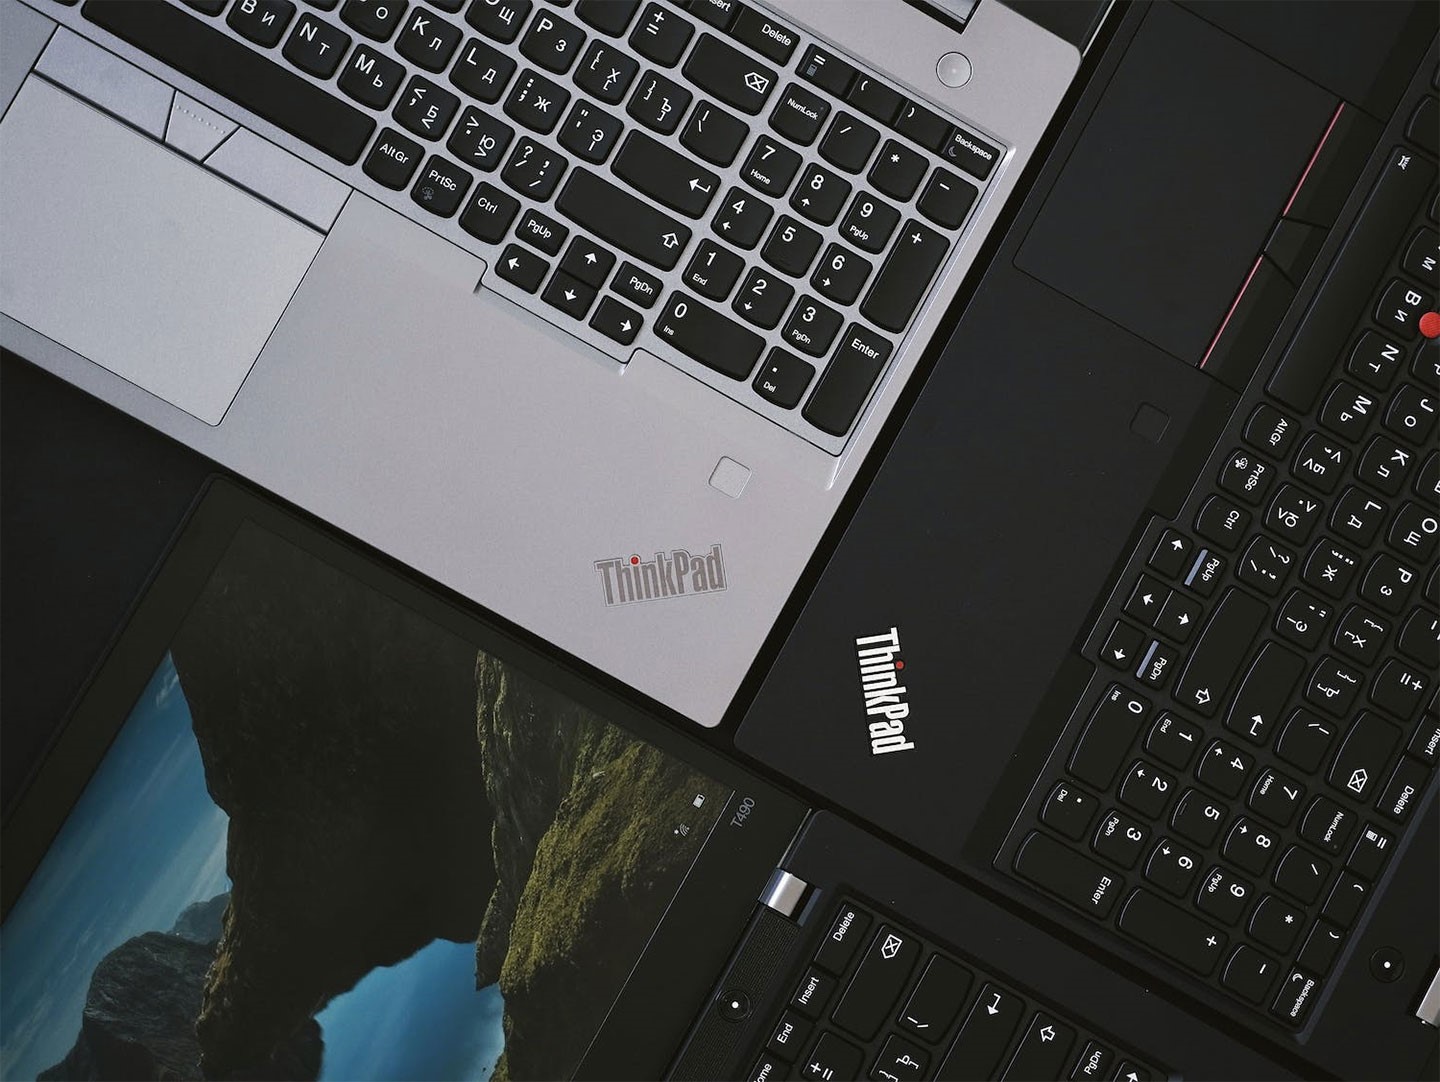 商務電界的「金招牌」ThinkPad 今年滿 30 了！細數過去曾經推出過的經典產品，不難發現其創新本質。